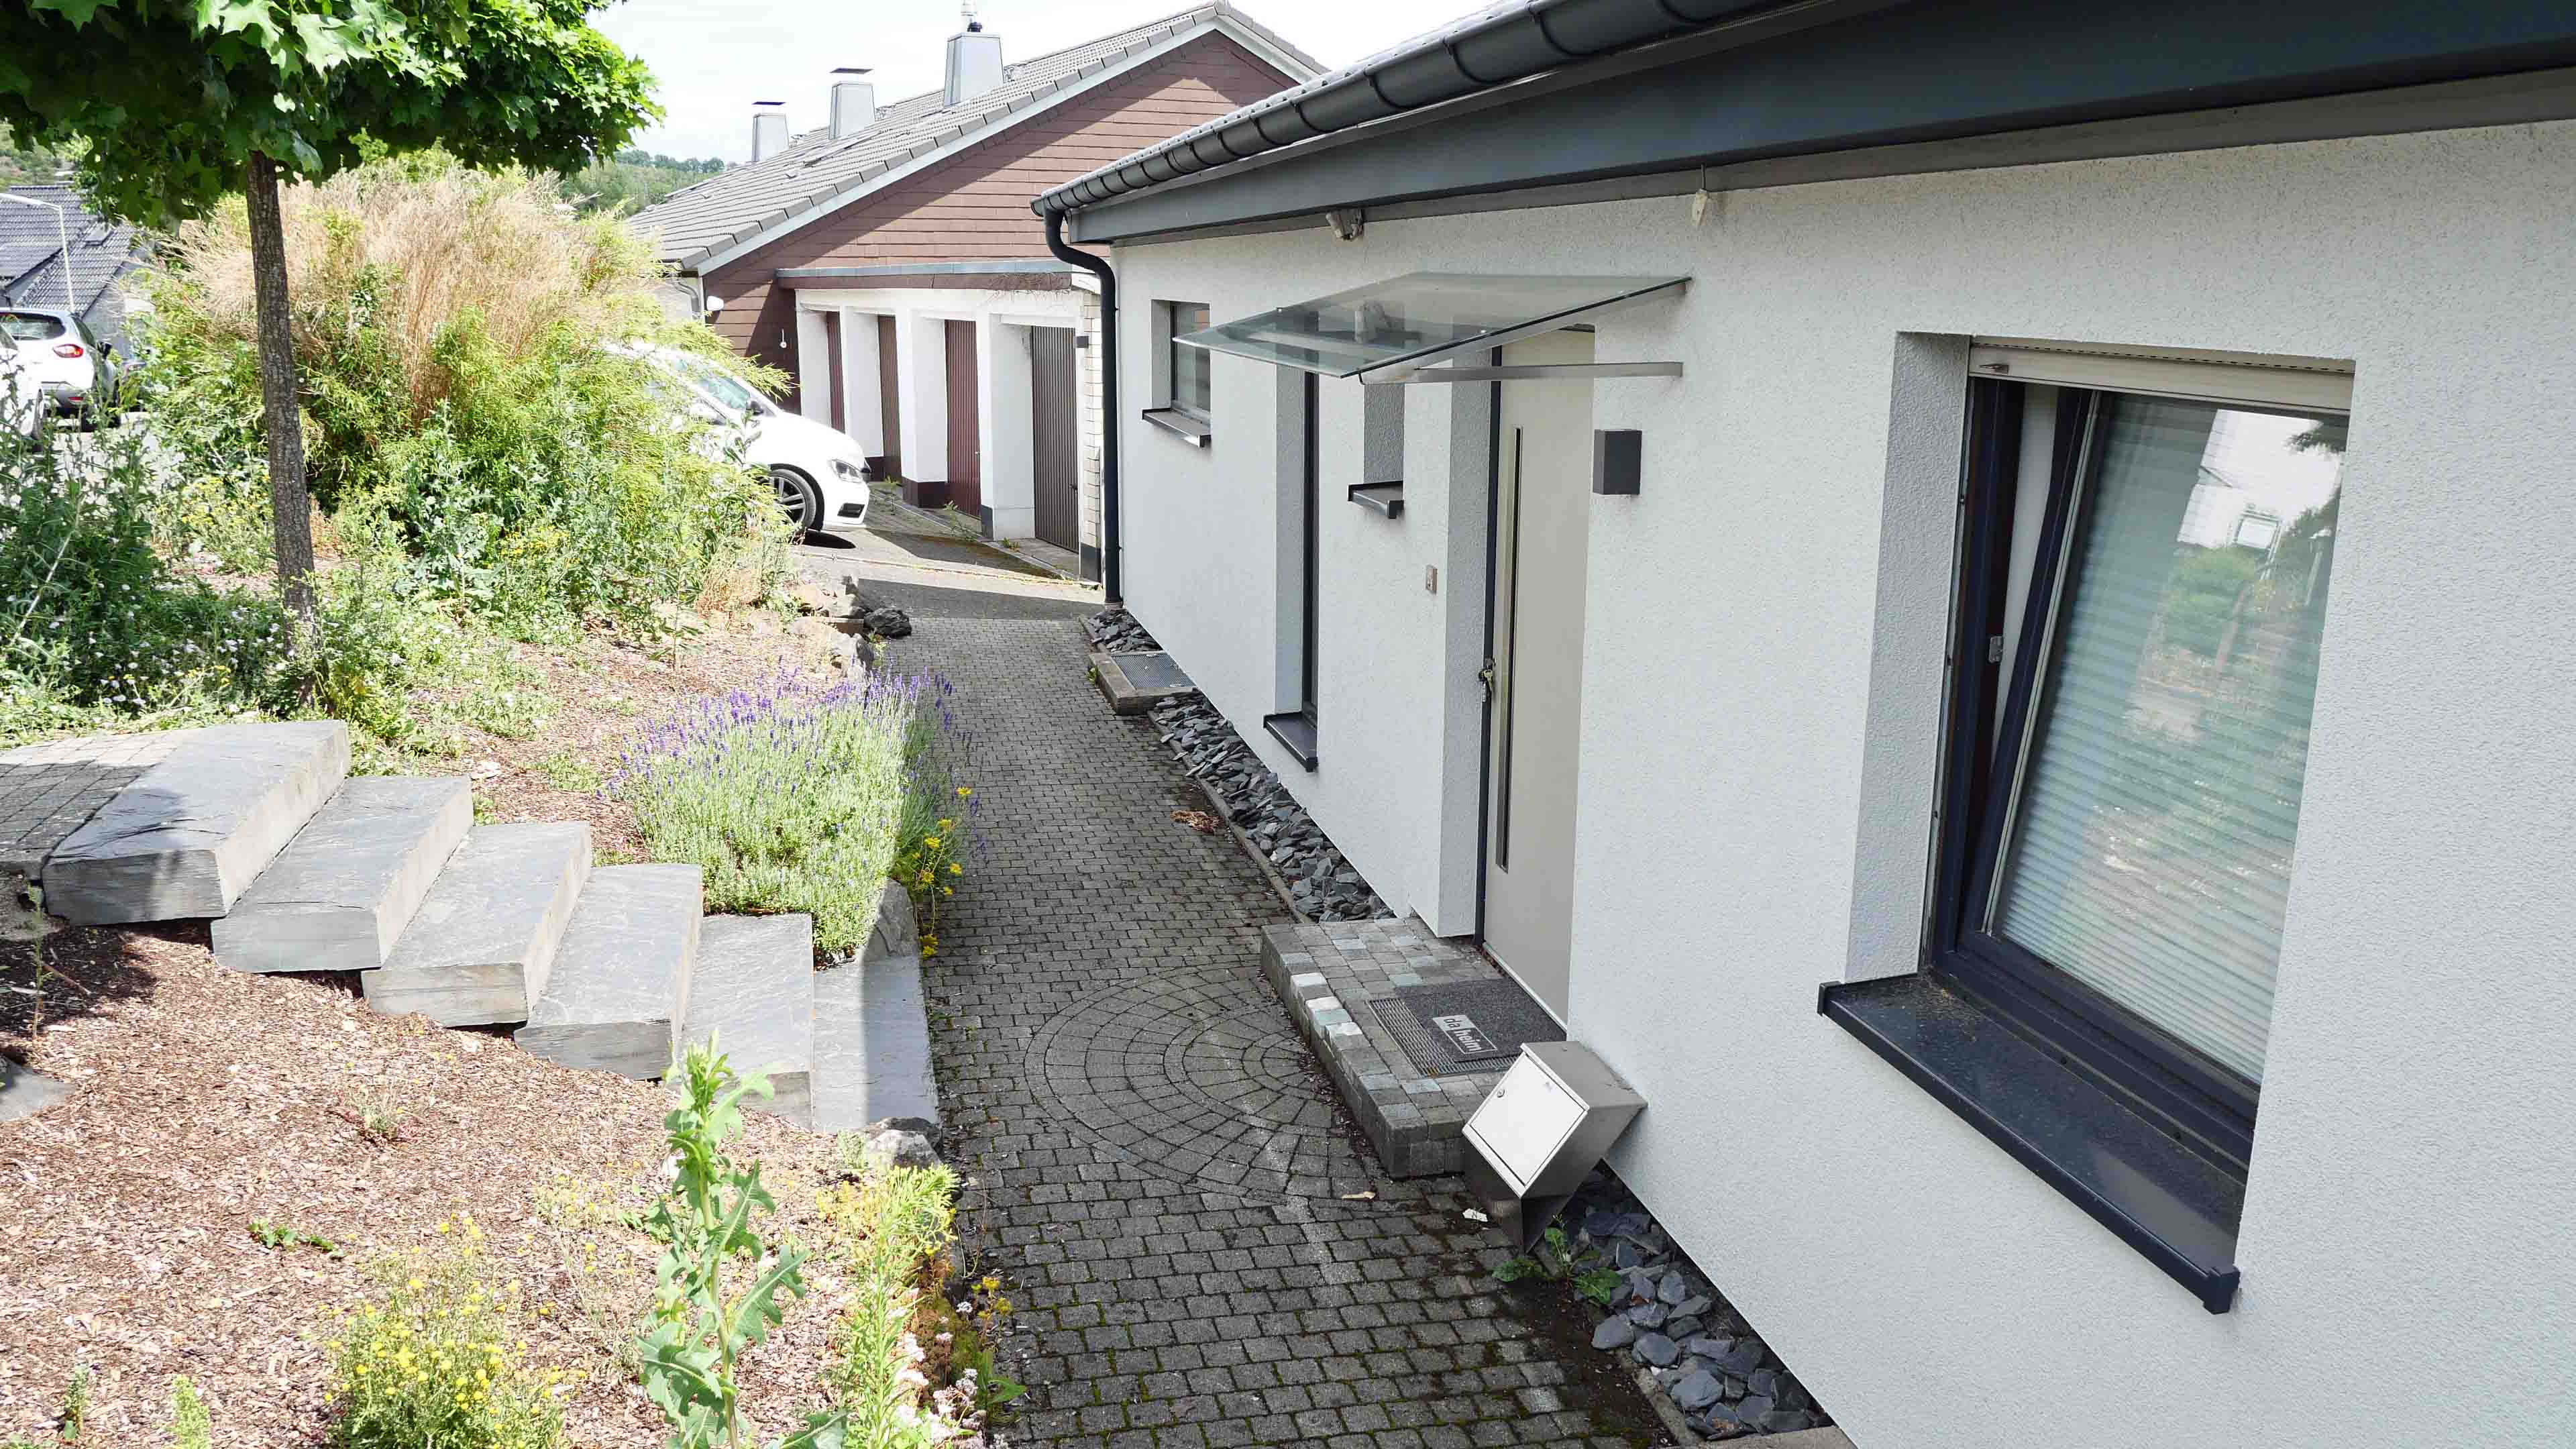 Morsbach: Topsanierter Bungalow mit Garage und herrlicher Terrasse, barrierefreier, ebener Zugang von Garage zum Haus